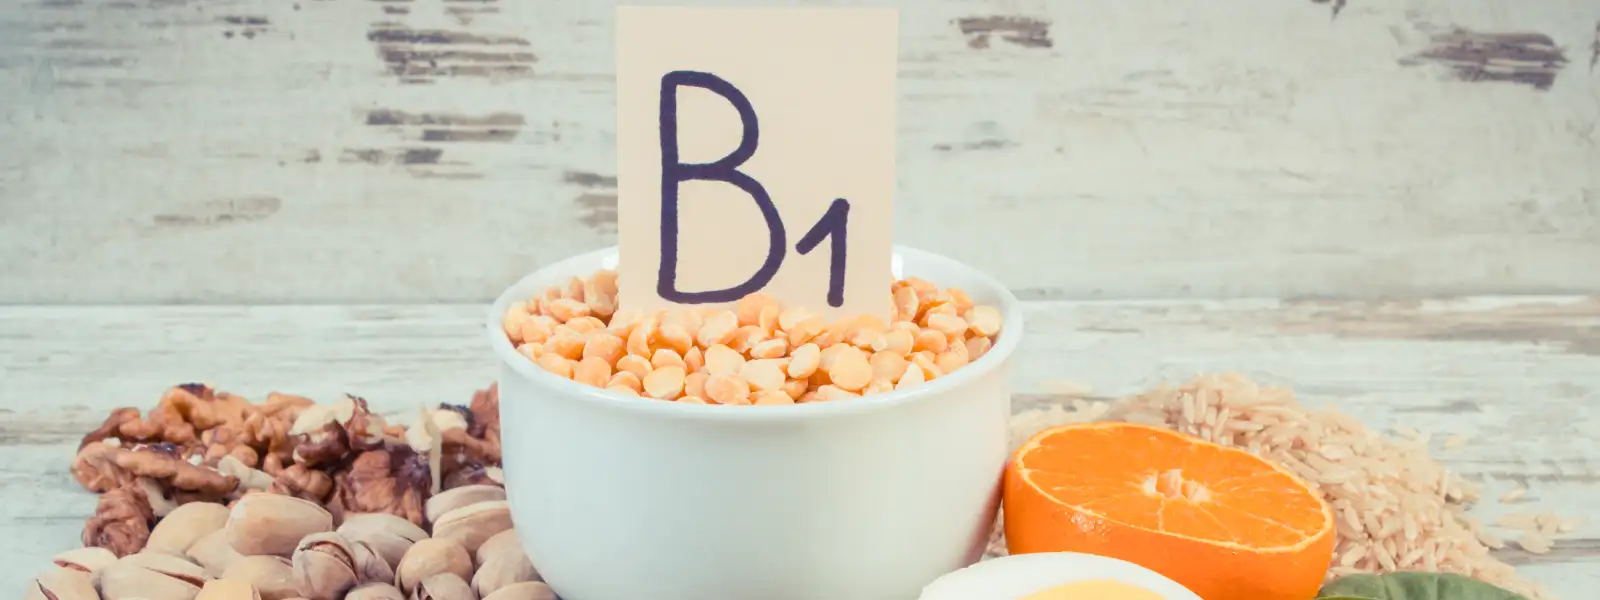 B1 Vitamini (Tiamin) Eksikliği Belirtileri Nelerdir?